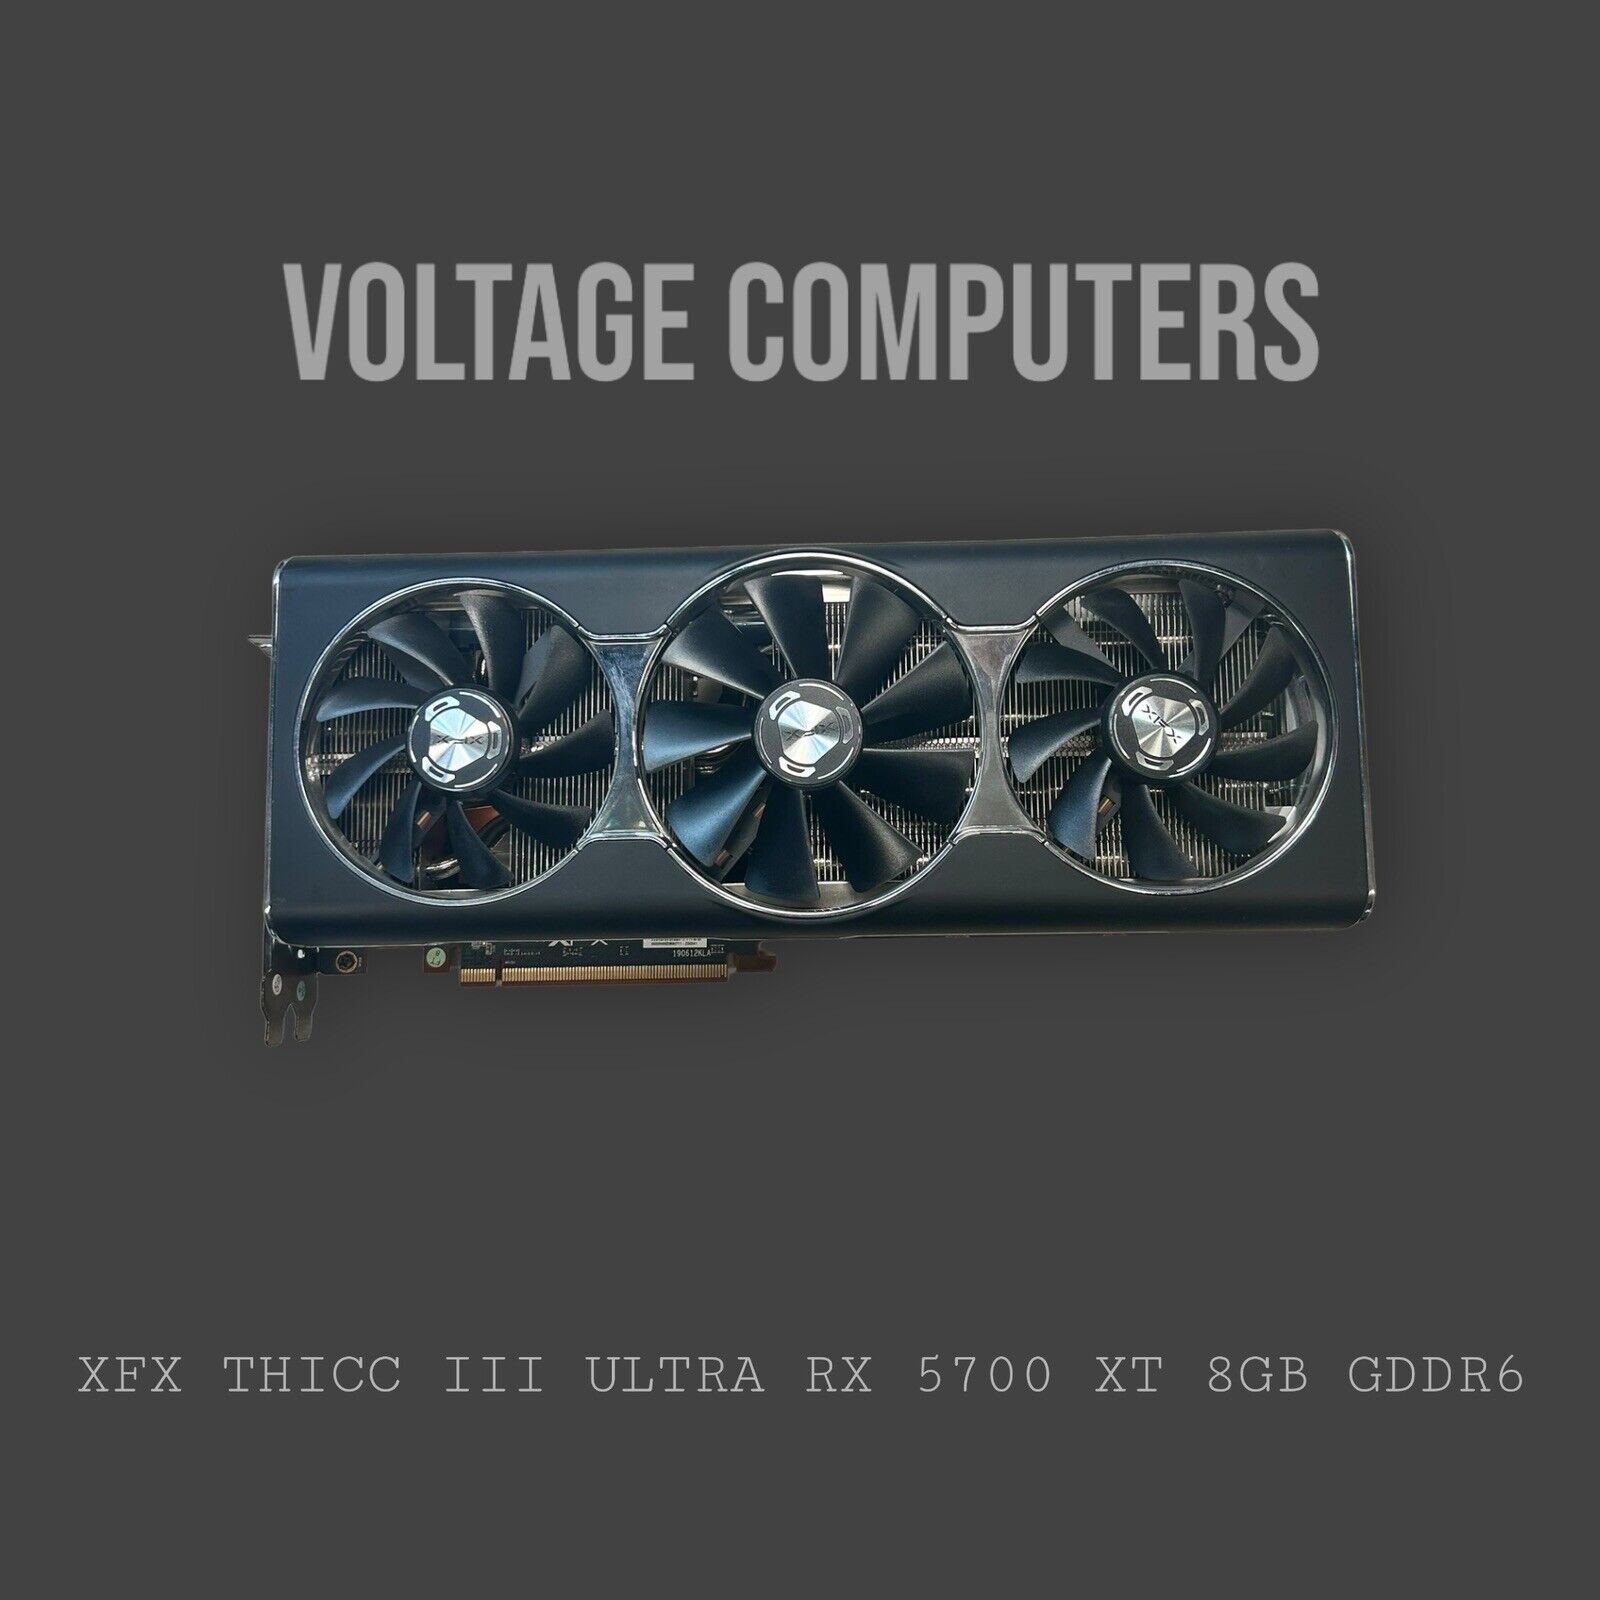 XFX THICC III Ultra RX 5700 XT 8GB GDDR6 Graphics Card GPU